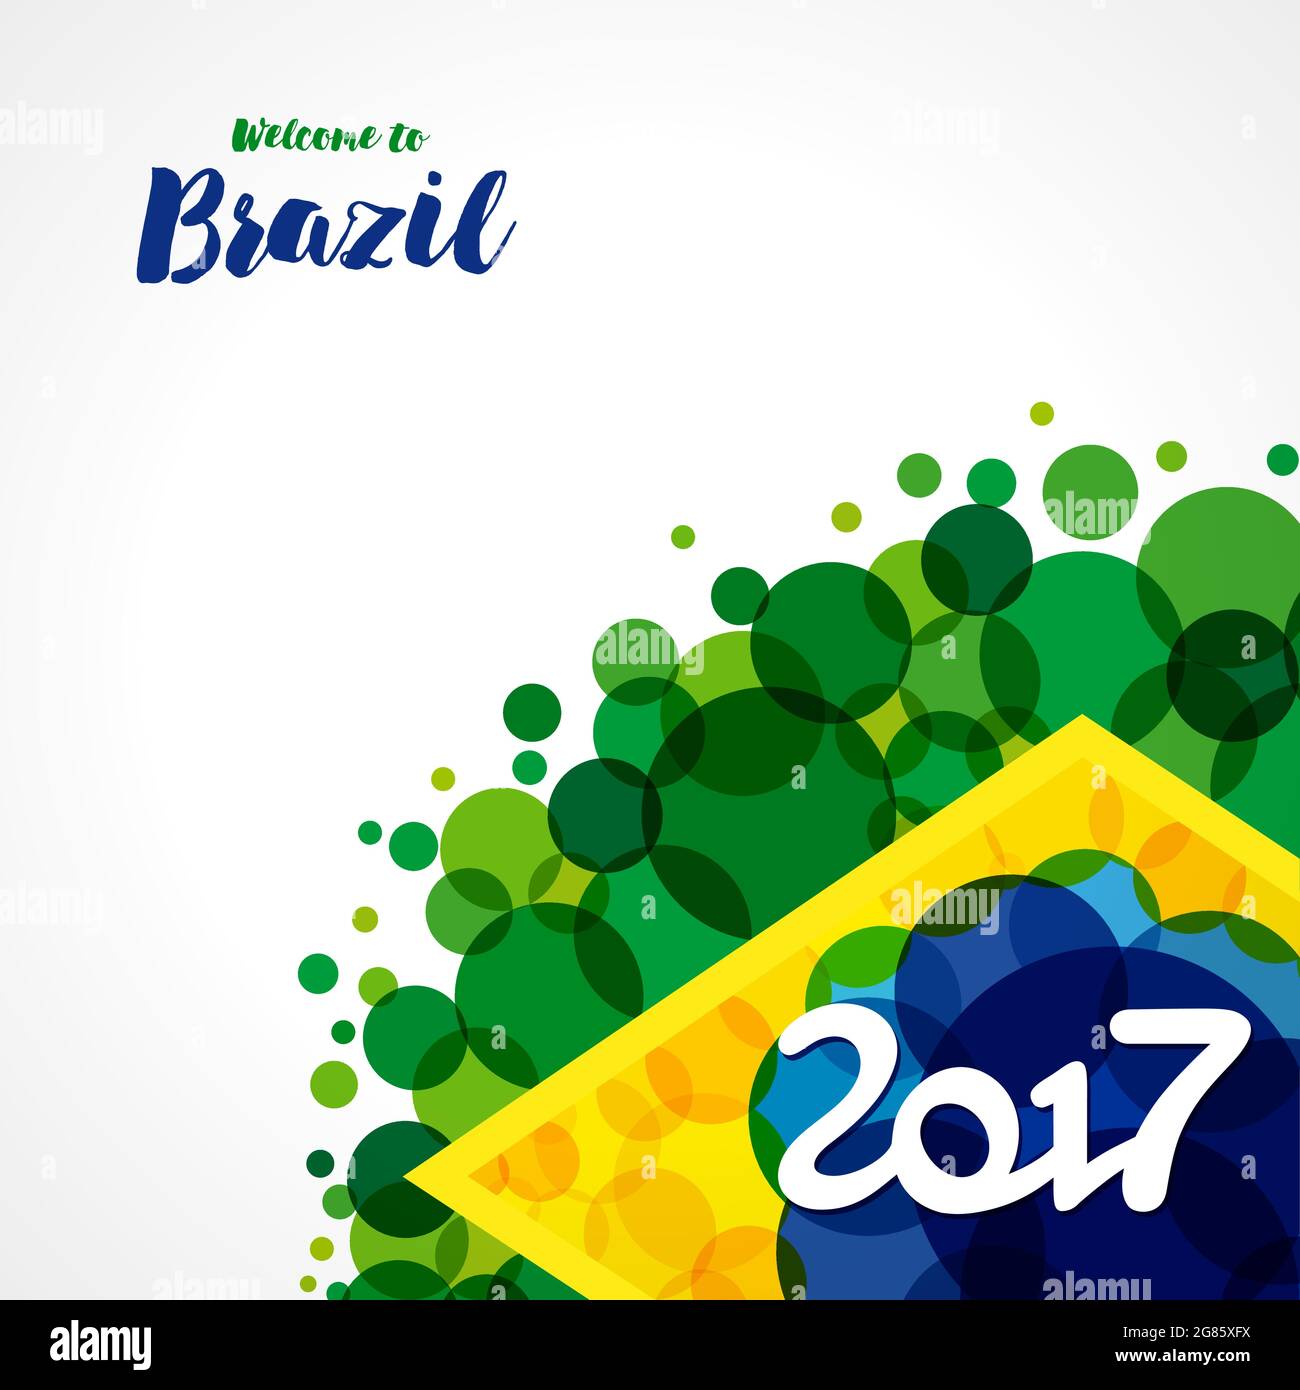 Willkommen bei Brasilien Coveridea. Brasilianische Flag-Elemente mit moderner Bubble-Textur. Kreatives Konzept mit nationalem Hintergrund. Isolierte abstrakte Grafik-Desi Stock Vektor